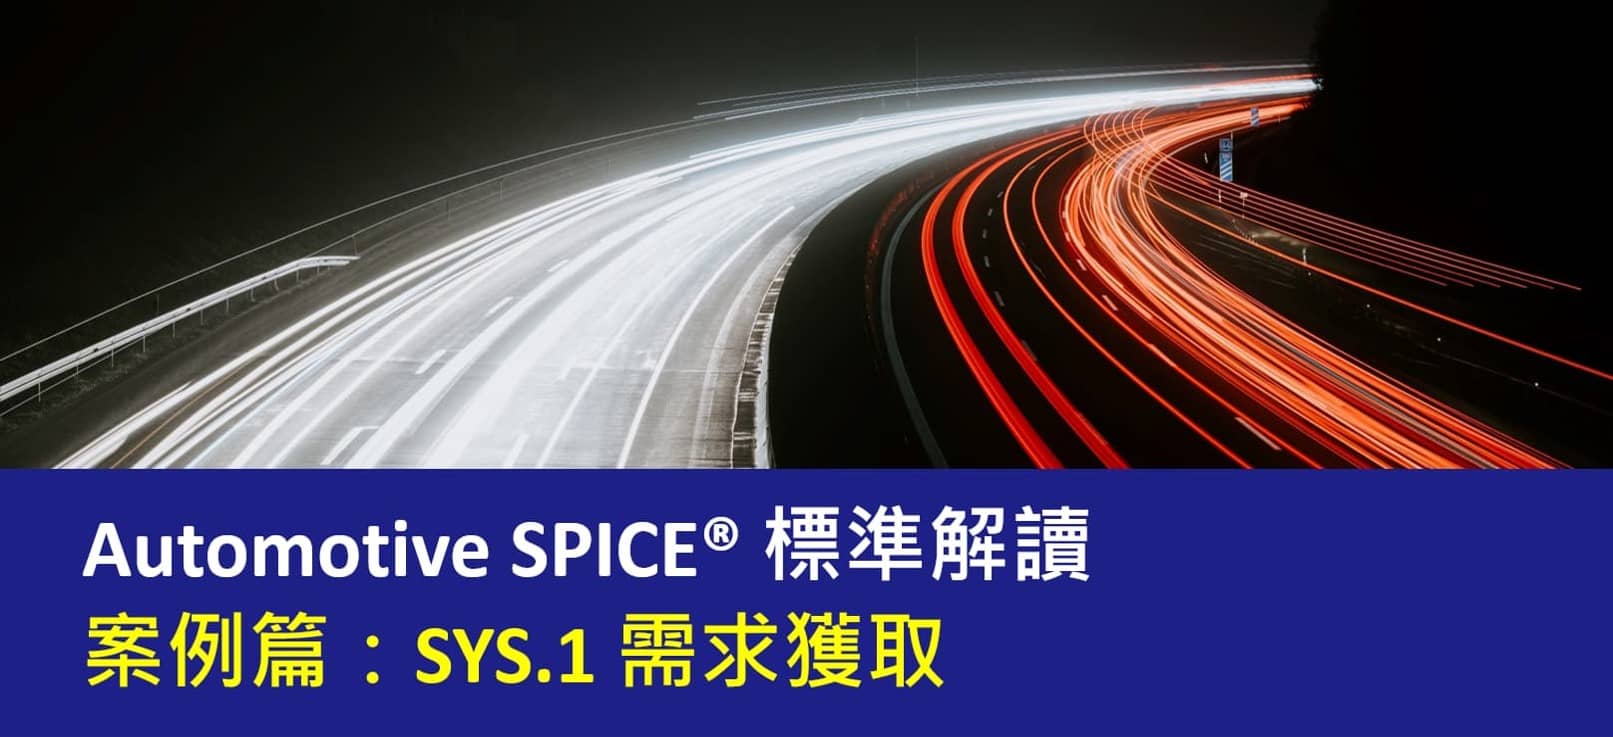 ASPICE案例: SYS.1 需求獲取